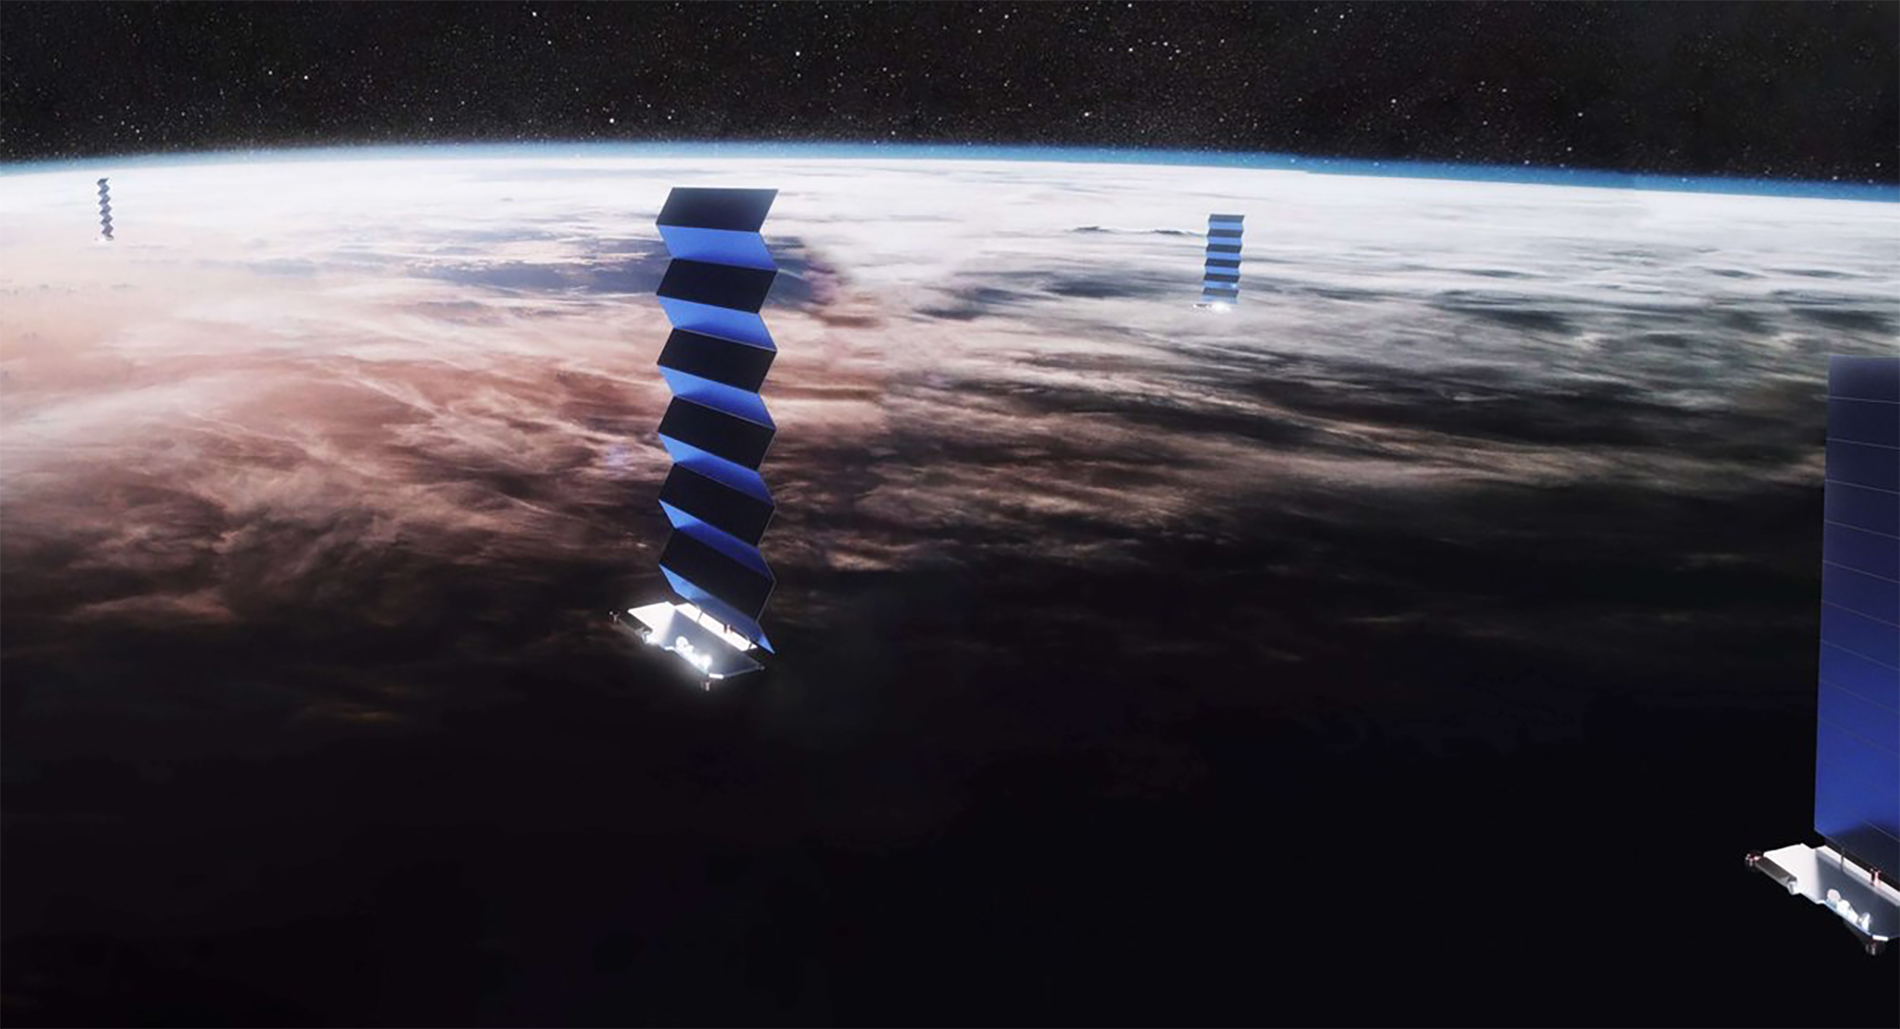 Starlink est une mégaconstellation de satellites de la société SpaceX qui, à terme, pourrait compter jusqu’à 42.000 satellite. Vue d'artiste d'un des satellites de la constellation Starlink. © SpaceX